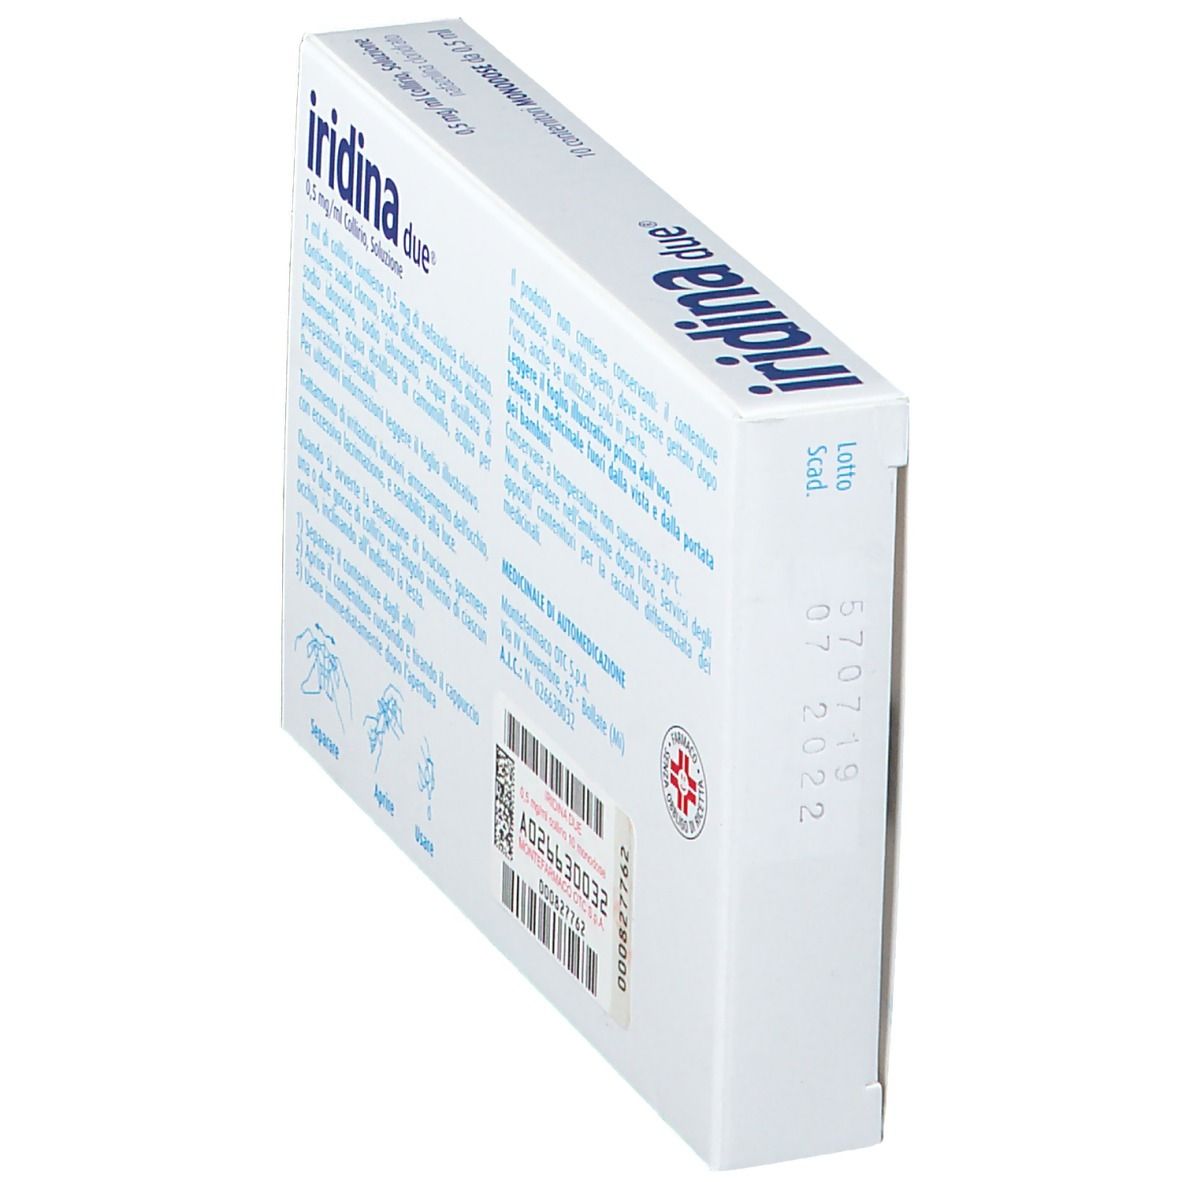 Iridina due® 0,5 mg/ml Collirio Contenitori monodose